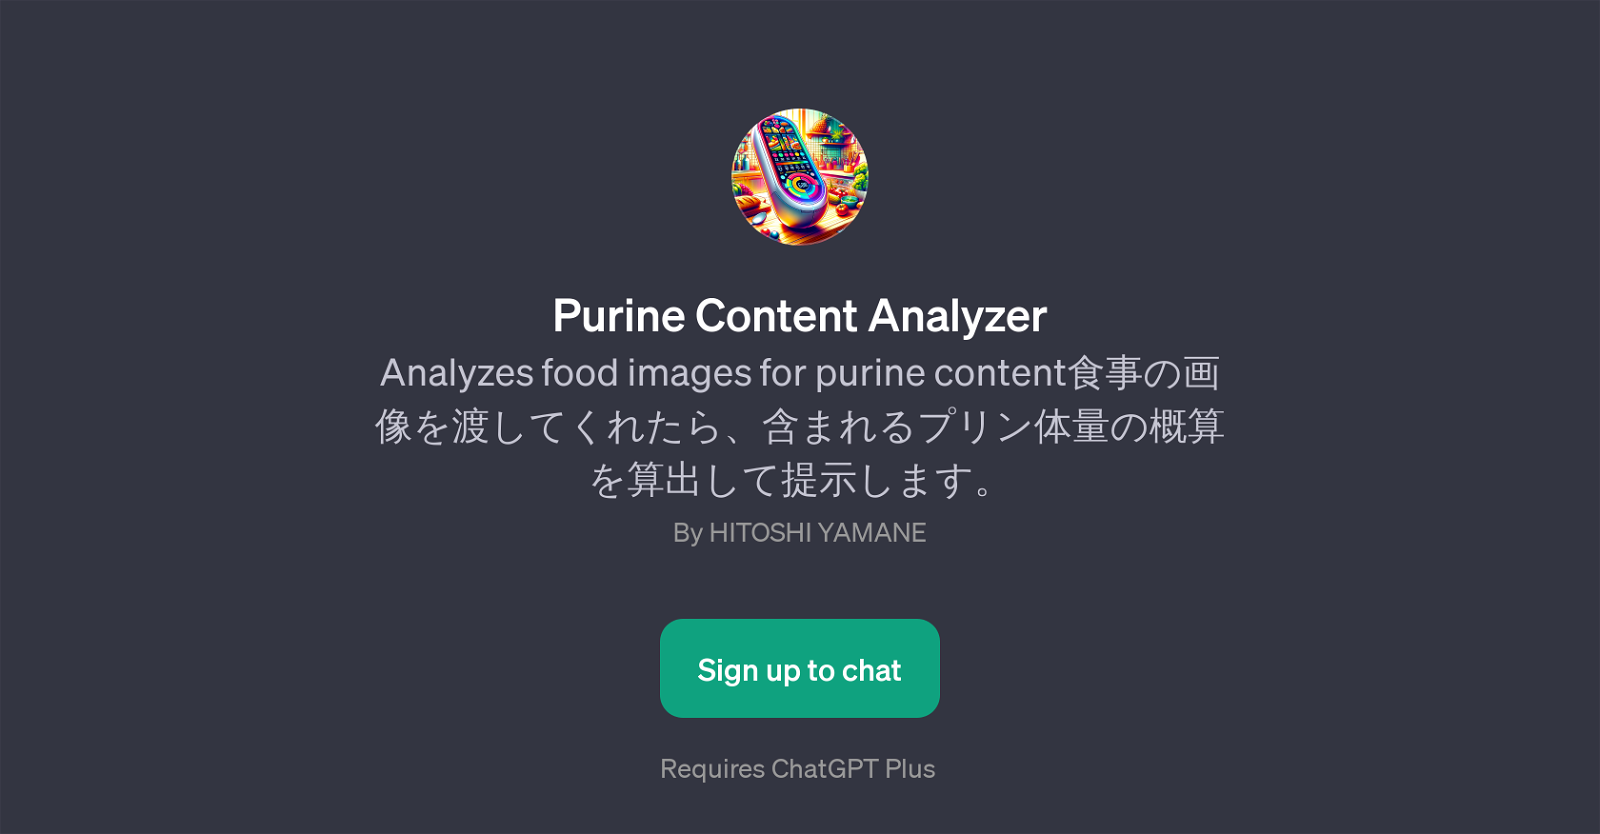 Purine Content Analyzer website